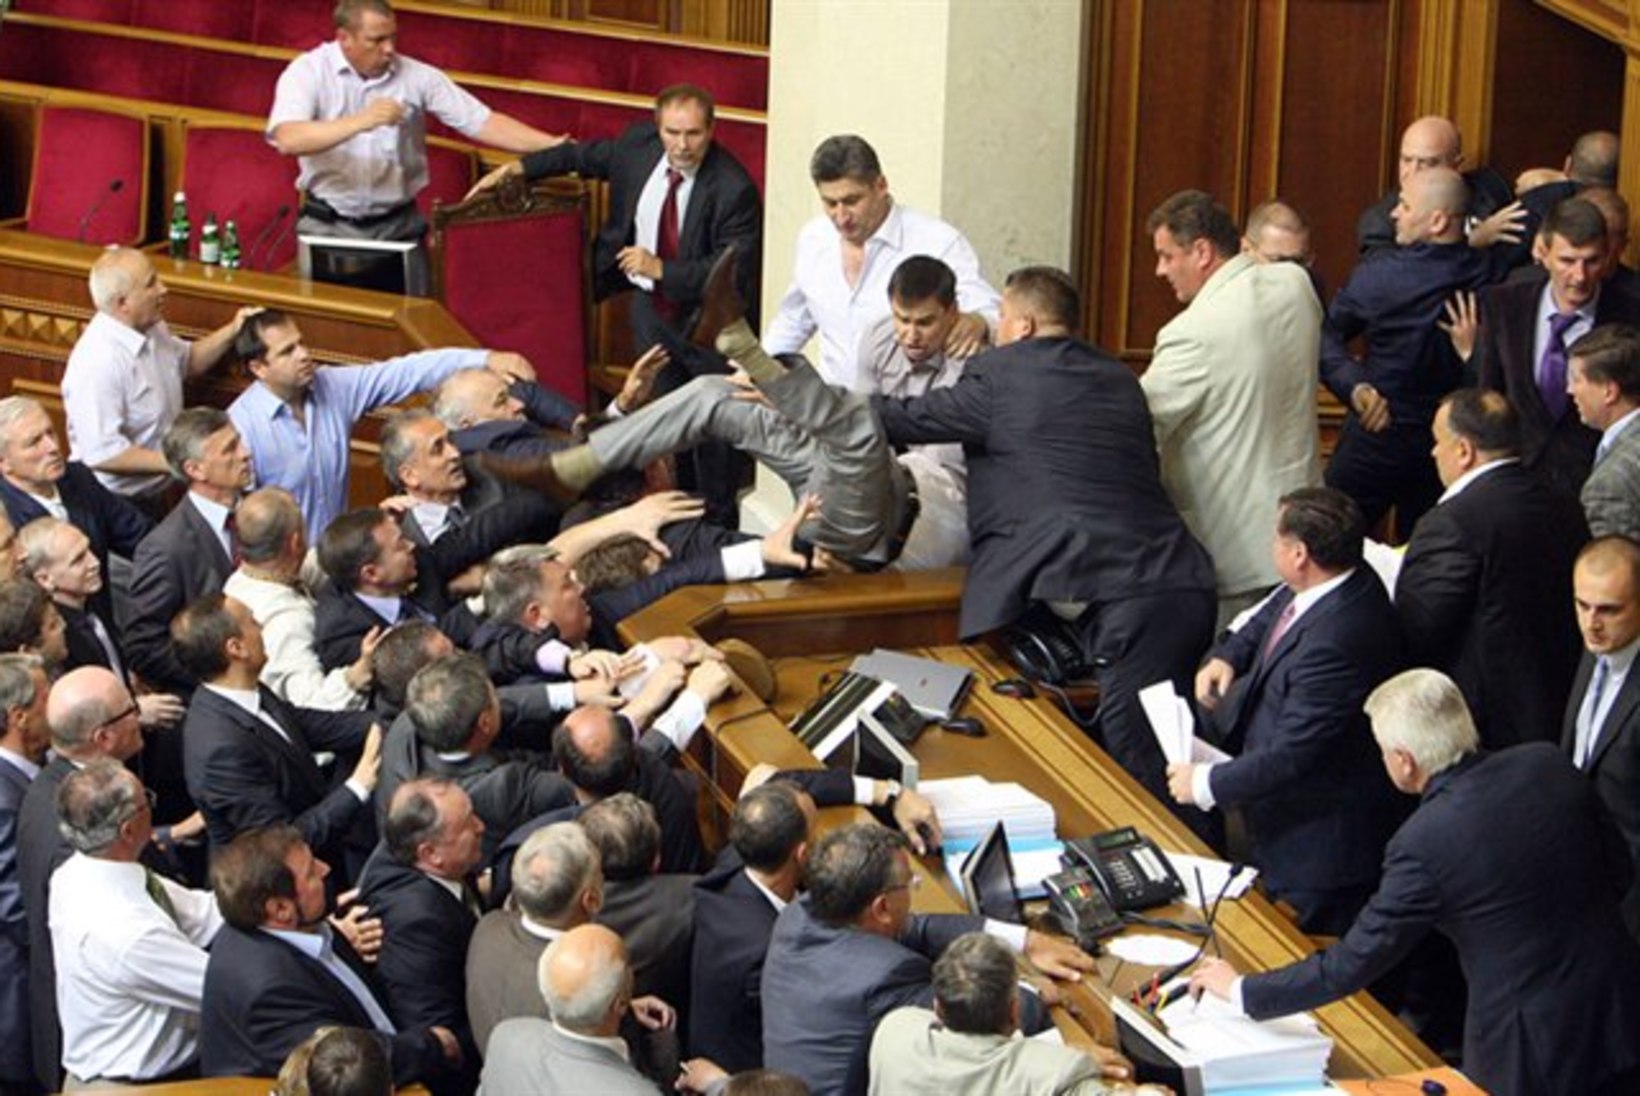 FOTOD JA VIDEO: Ukraina parlamendis läks veriseks löömaks